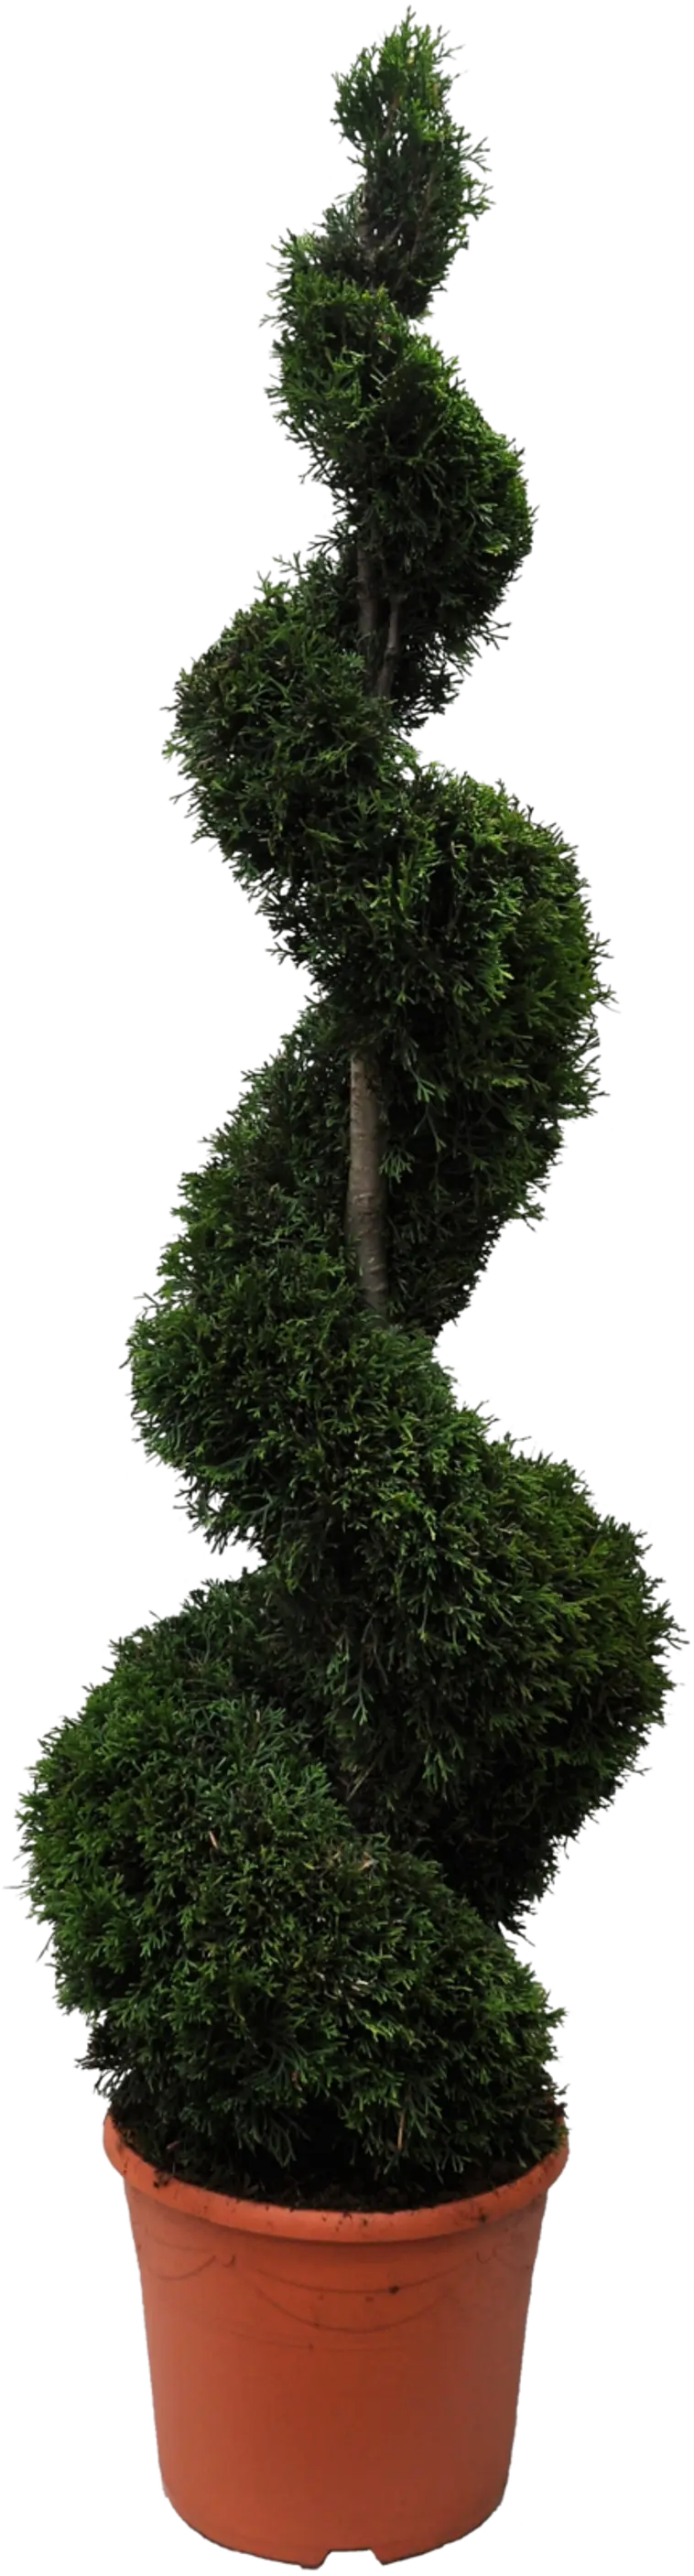 Timanttituija spiraali 140-160 cm ruukutettu 17 l ruukkuun Thuja  occidentalis 'Smaragd' | Prisma verkkokauppa